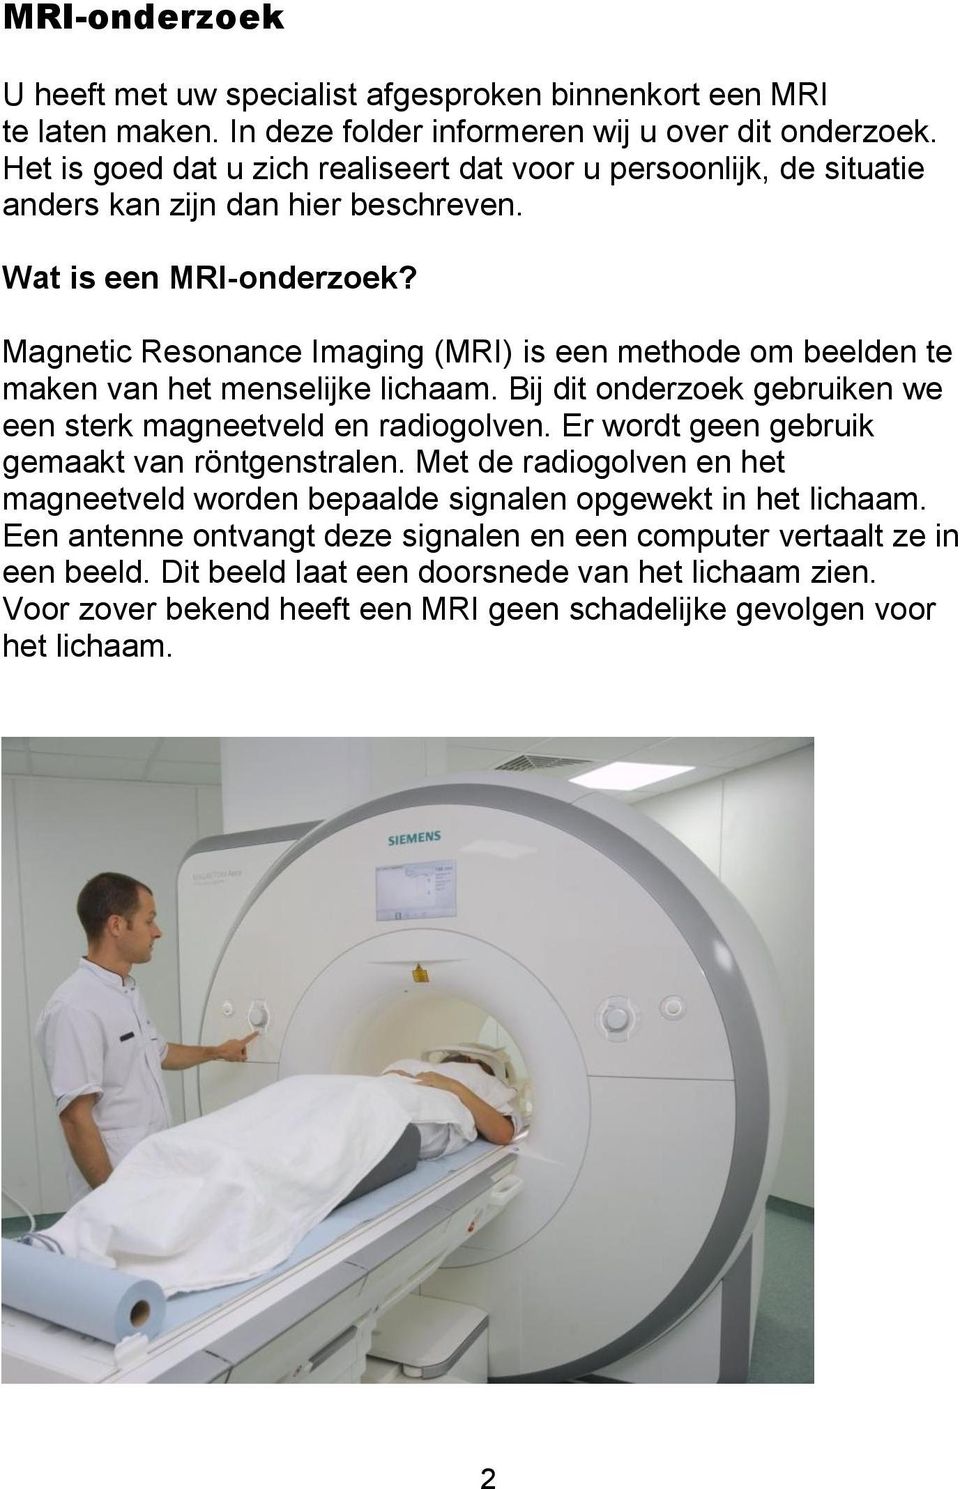 Magnetic Resonance Imaging (MRI) is een methode om beelden te maken van het menselijke lichaam. Bij dit onderzoek gebruiken we een sterk magneetveld en radiogolven.